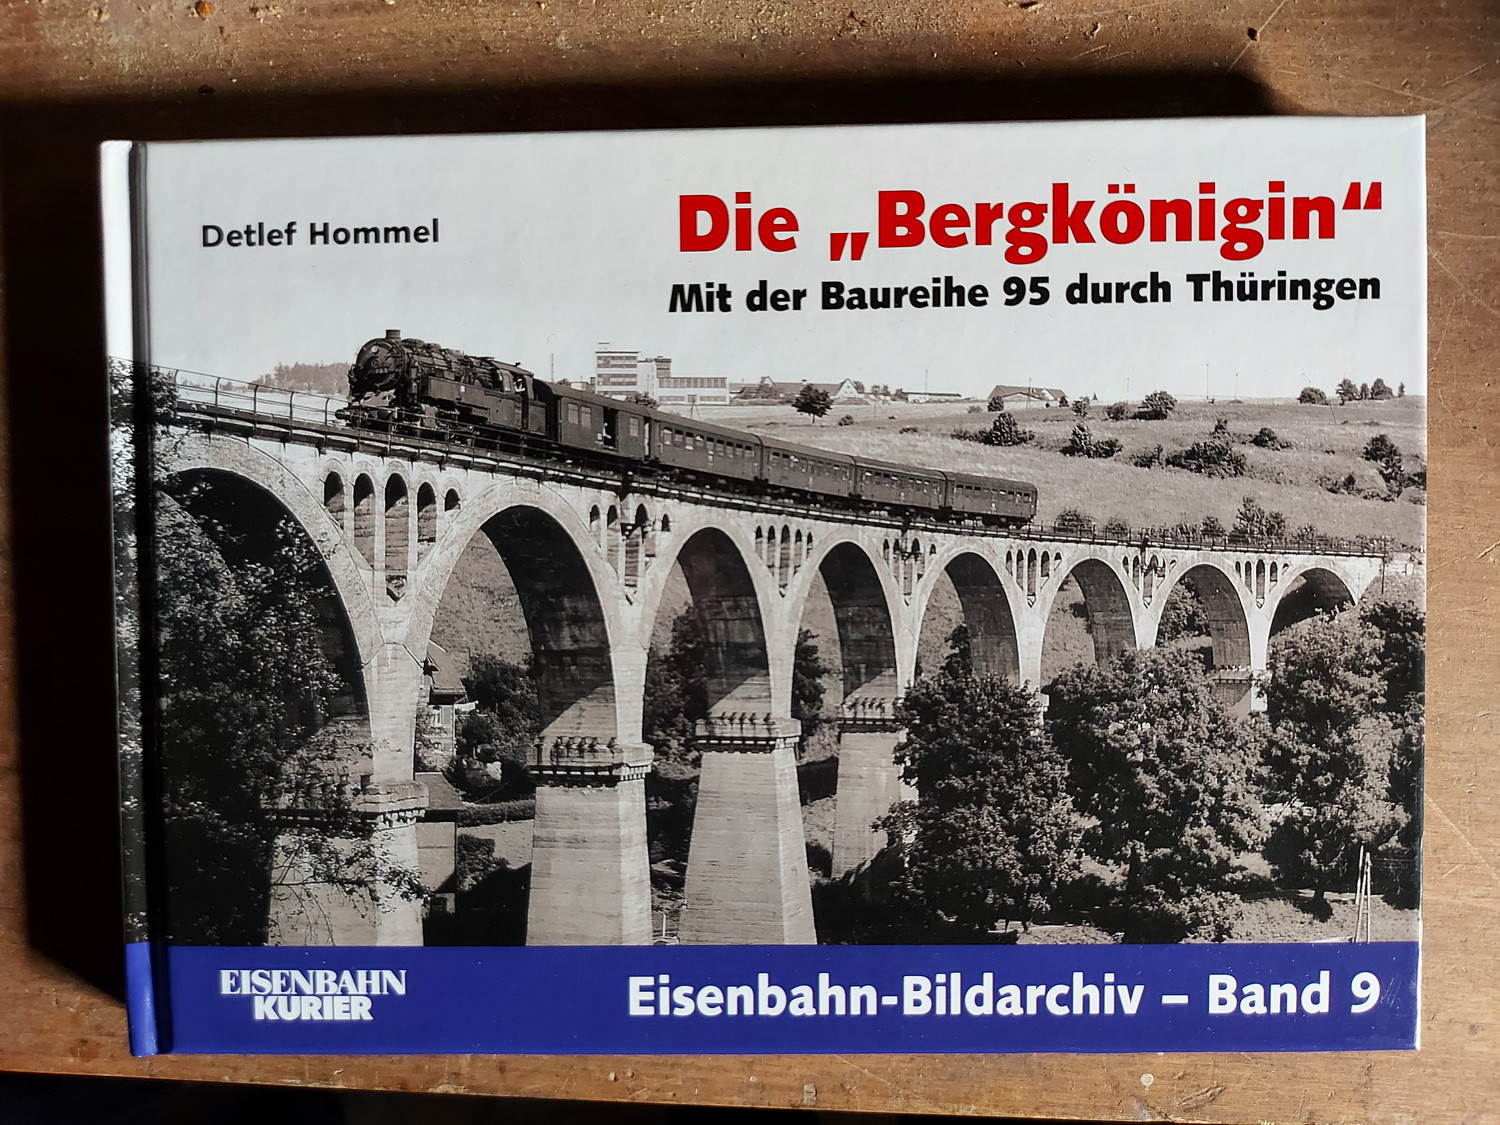 Die "Bergkönigin" Mit der Baureihe 95 durch Thüringen, Eisenbahn-Bildarchiv Band 9